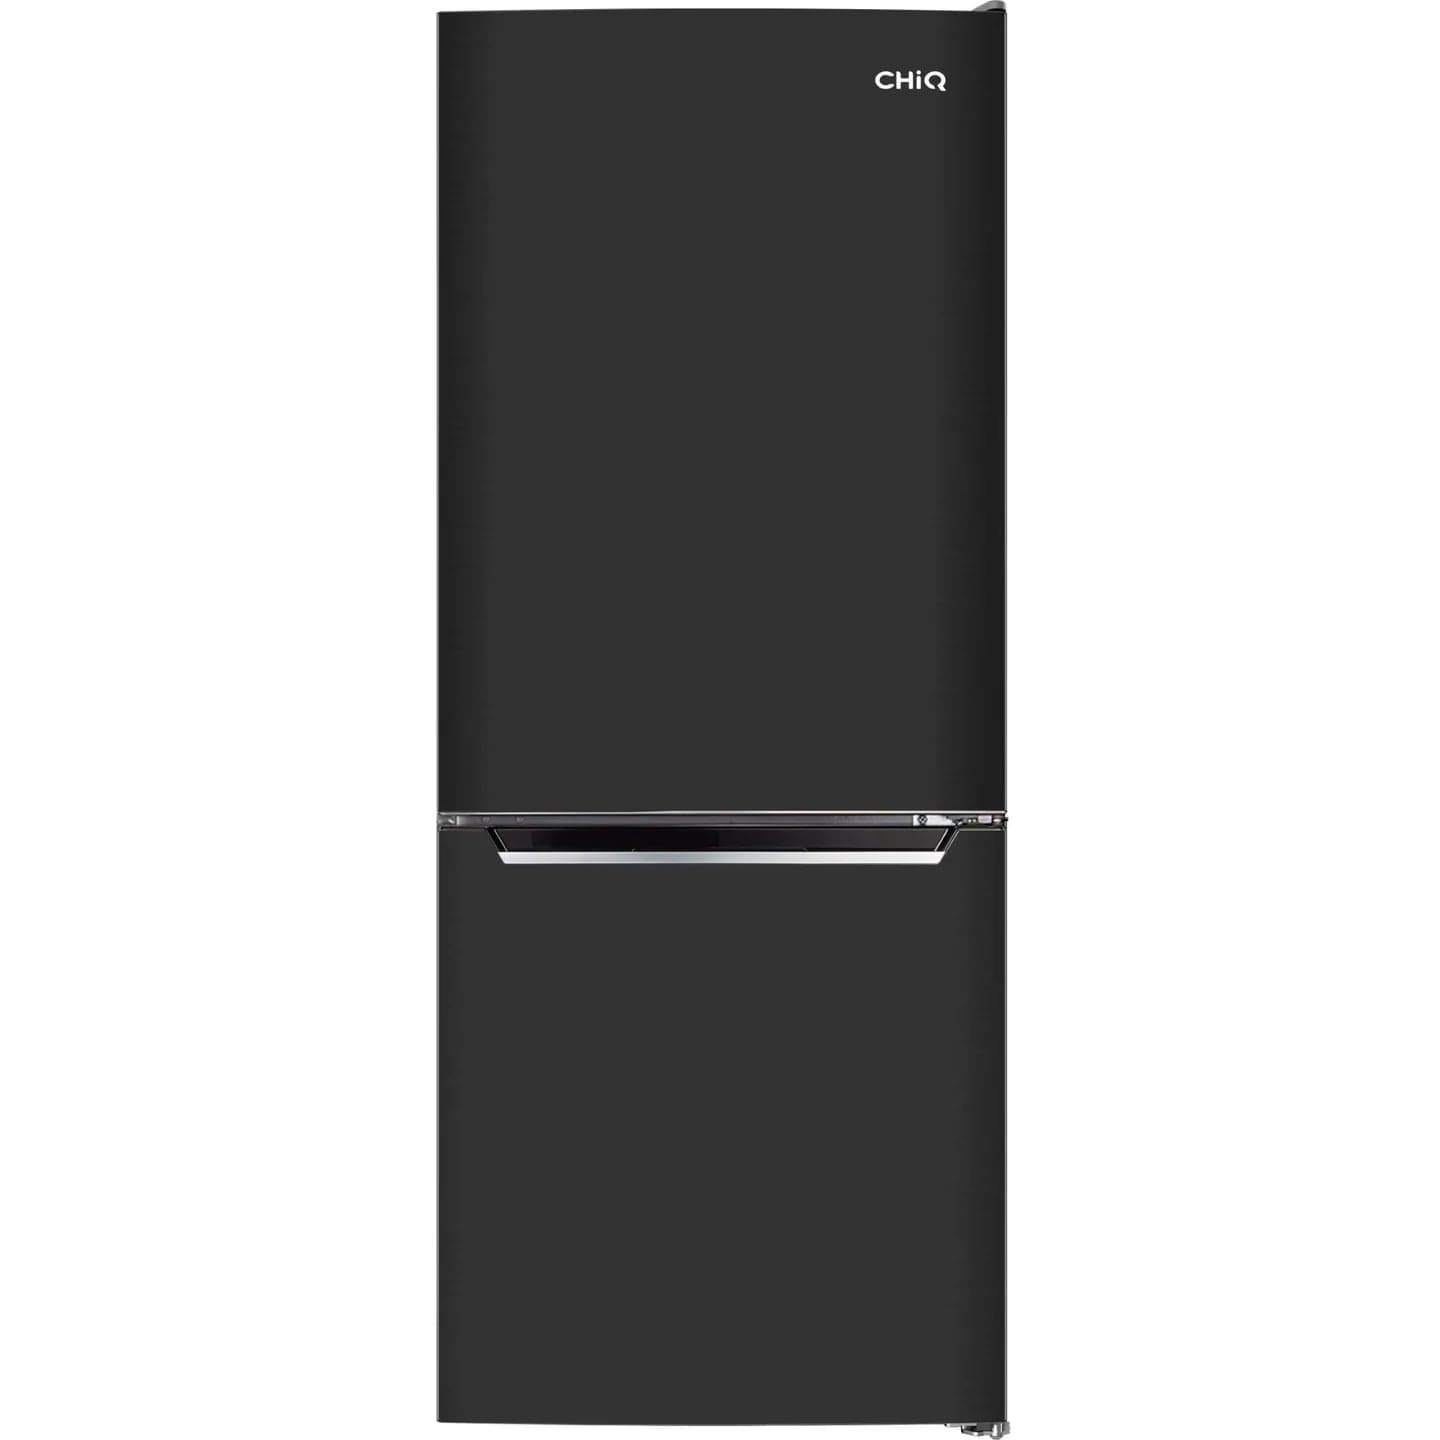 Chiq 283l bottom mount fridge (black)